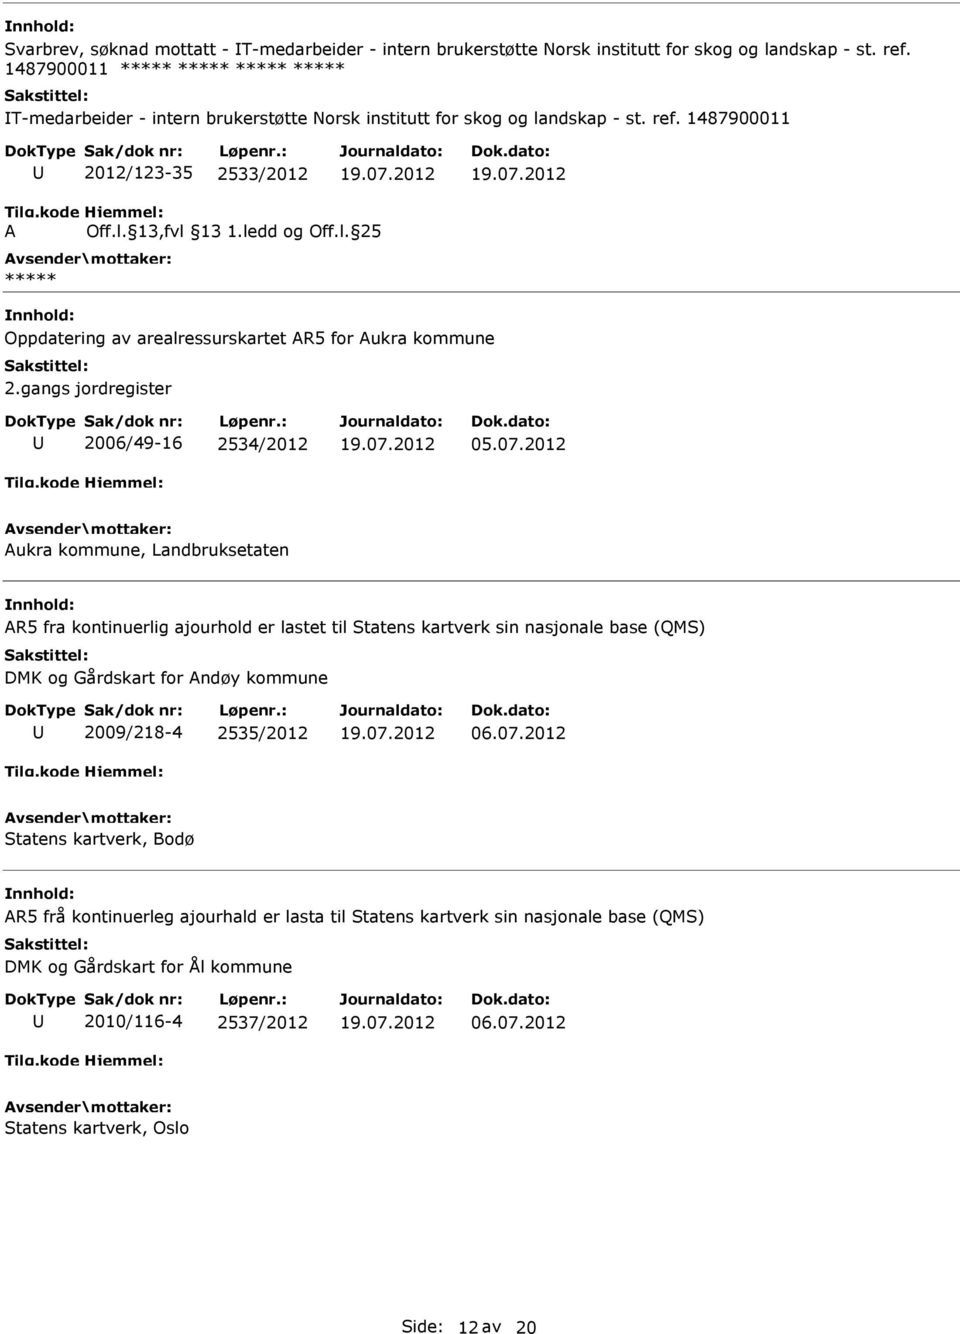 1487900011 2012/123-35 2533/2012 Oppdatering av arealressurskartet R5 for ukra kommune 2.gangs jordregister 2006/49-16 2534/2012 05.07.